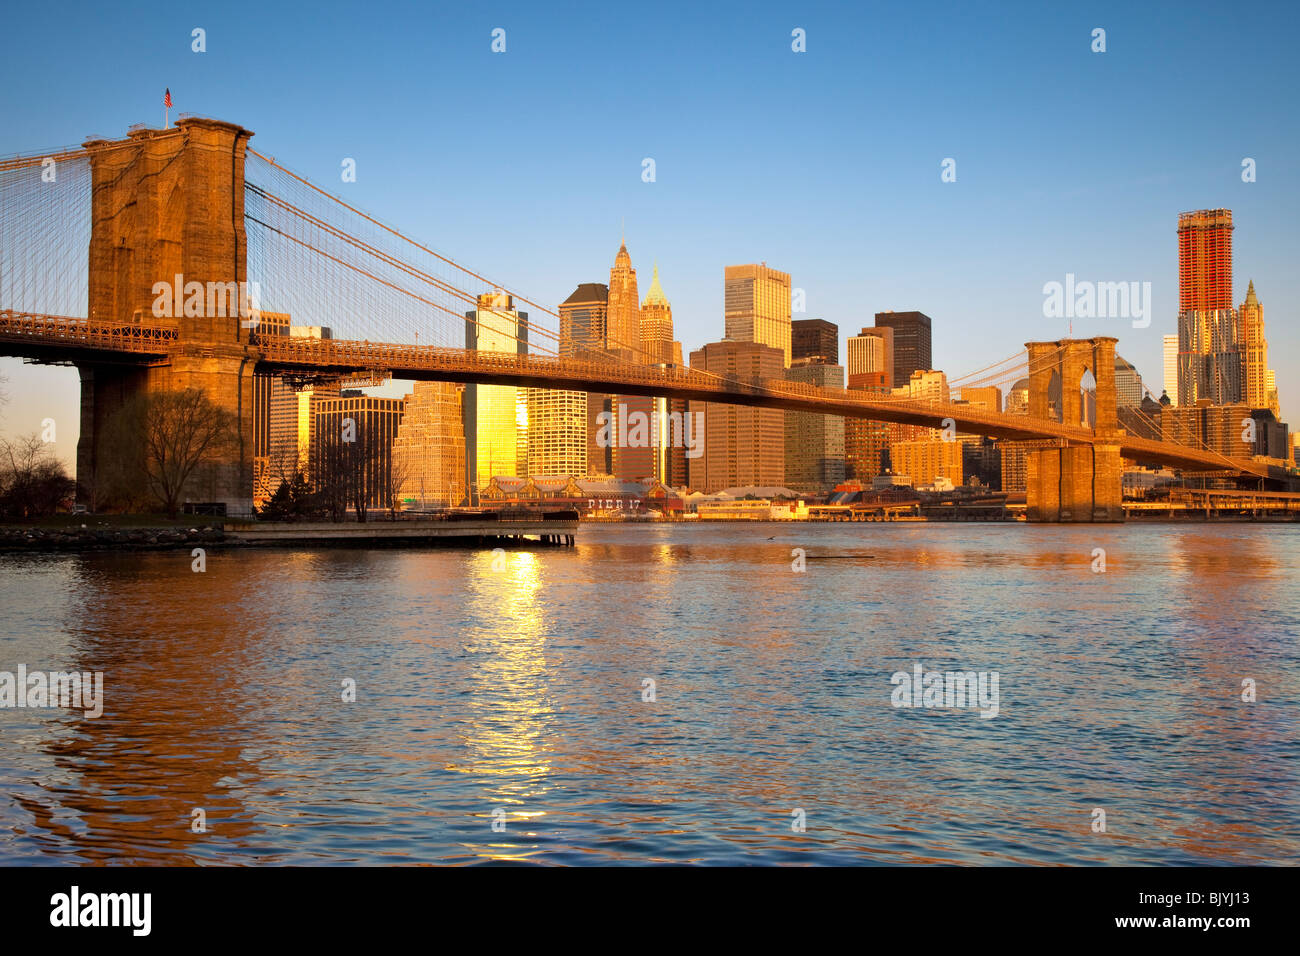 El Puente de Brooklyn y los edificios de Manhattan, el distrito financiero de la ciudad de Nueva York, EE.UU. Foto de stock